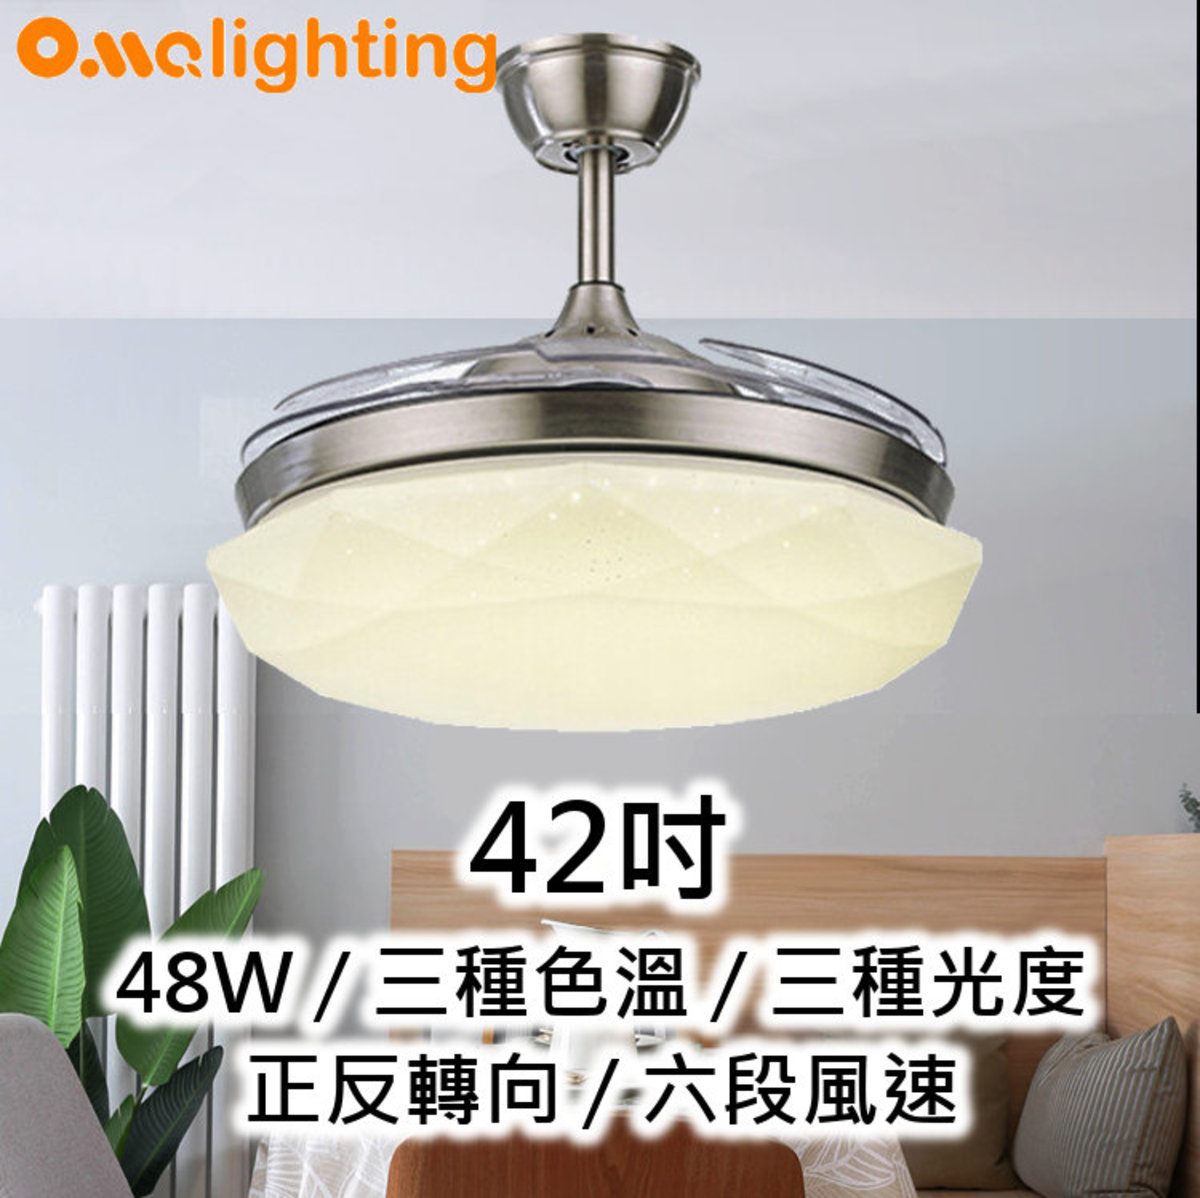 風扇燈42吋 LED48W 3種光度色溫 開合扇葉 吸頂天花燈飾 FAN01-42SV (2926)